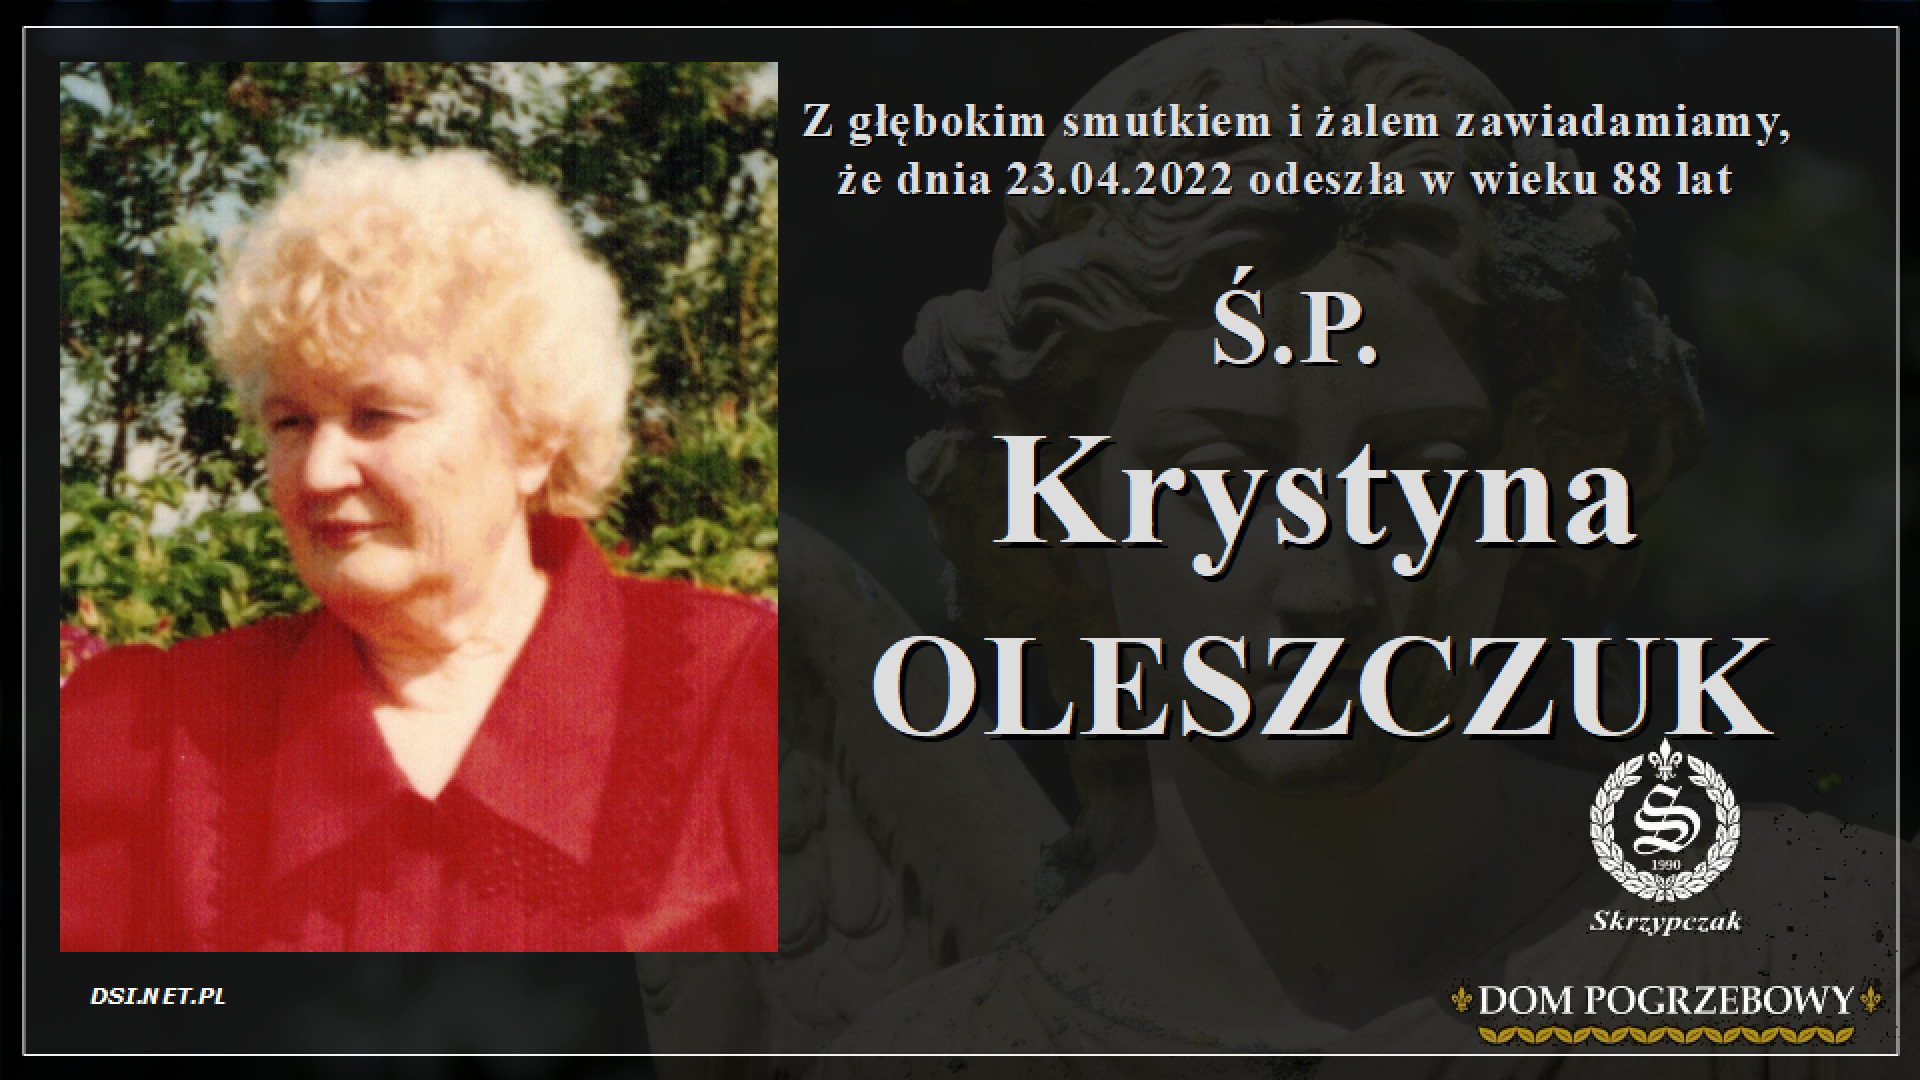 Ś.P. Krystyna Oleszczuk